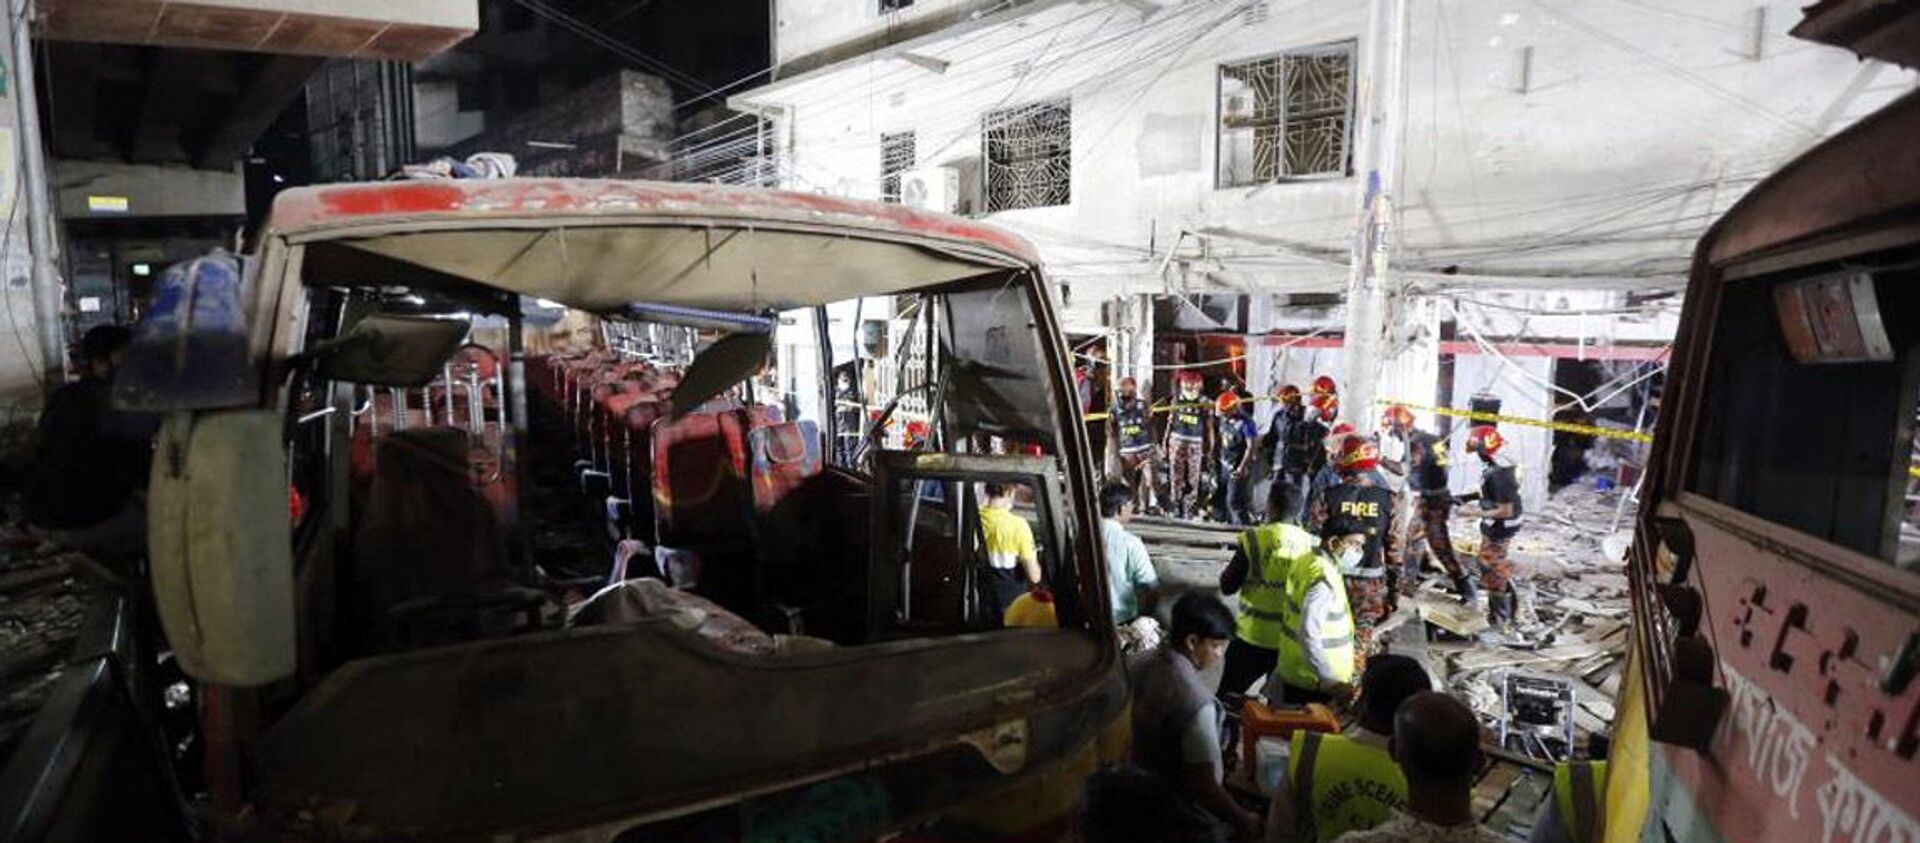 Bangladeş’in başkenti Dakka’da bulunan bir binanın zemin katında meydana gelen patlamada, ilk belirlemelere göre en az 7 kişinin hayatını kaybettiği, 50’den fazla kişinin ise yaralandığı bildirildi. - Sputnik Türkiye, 1920, 28.06.2021